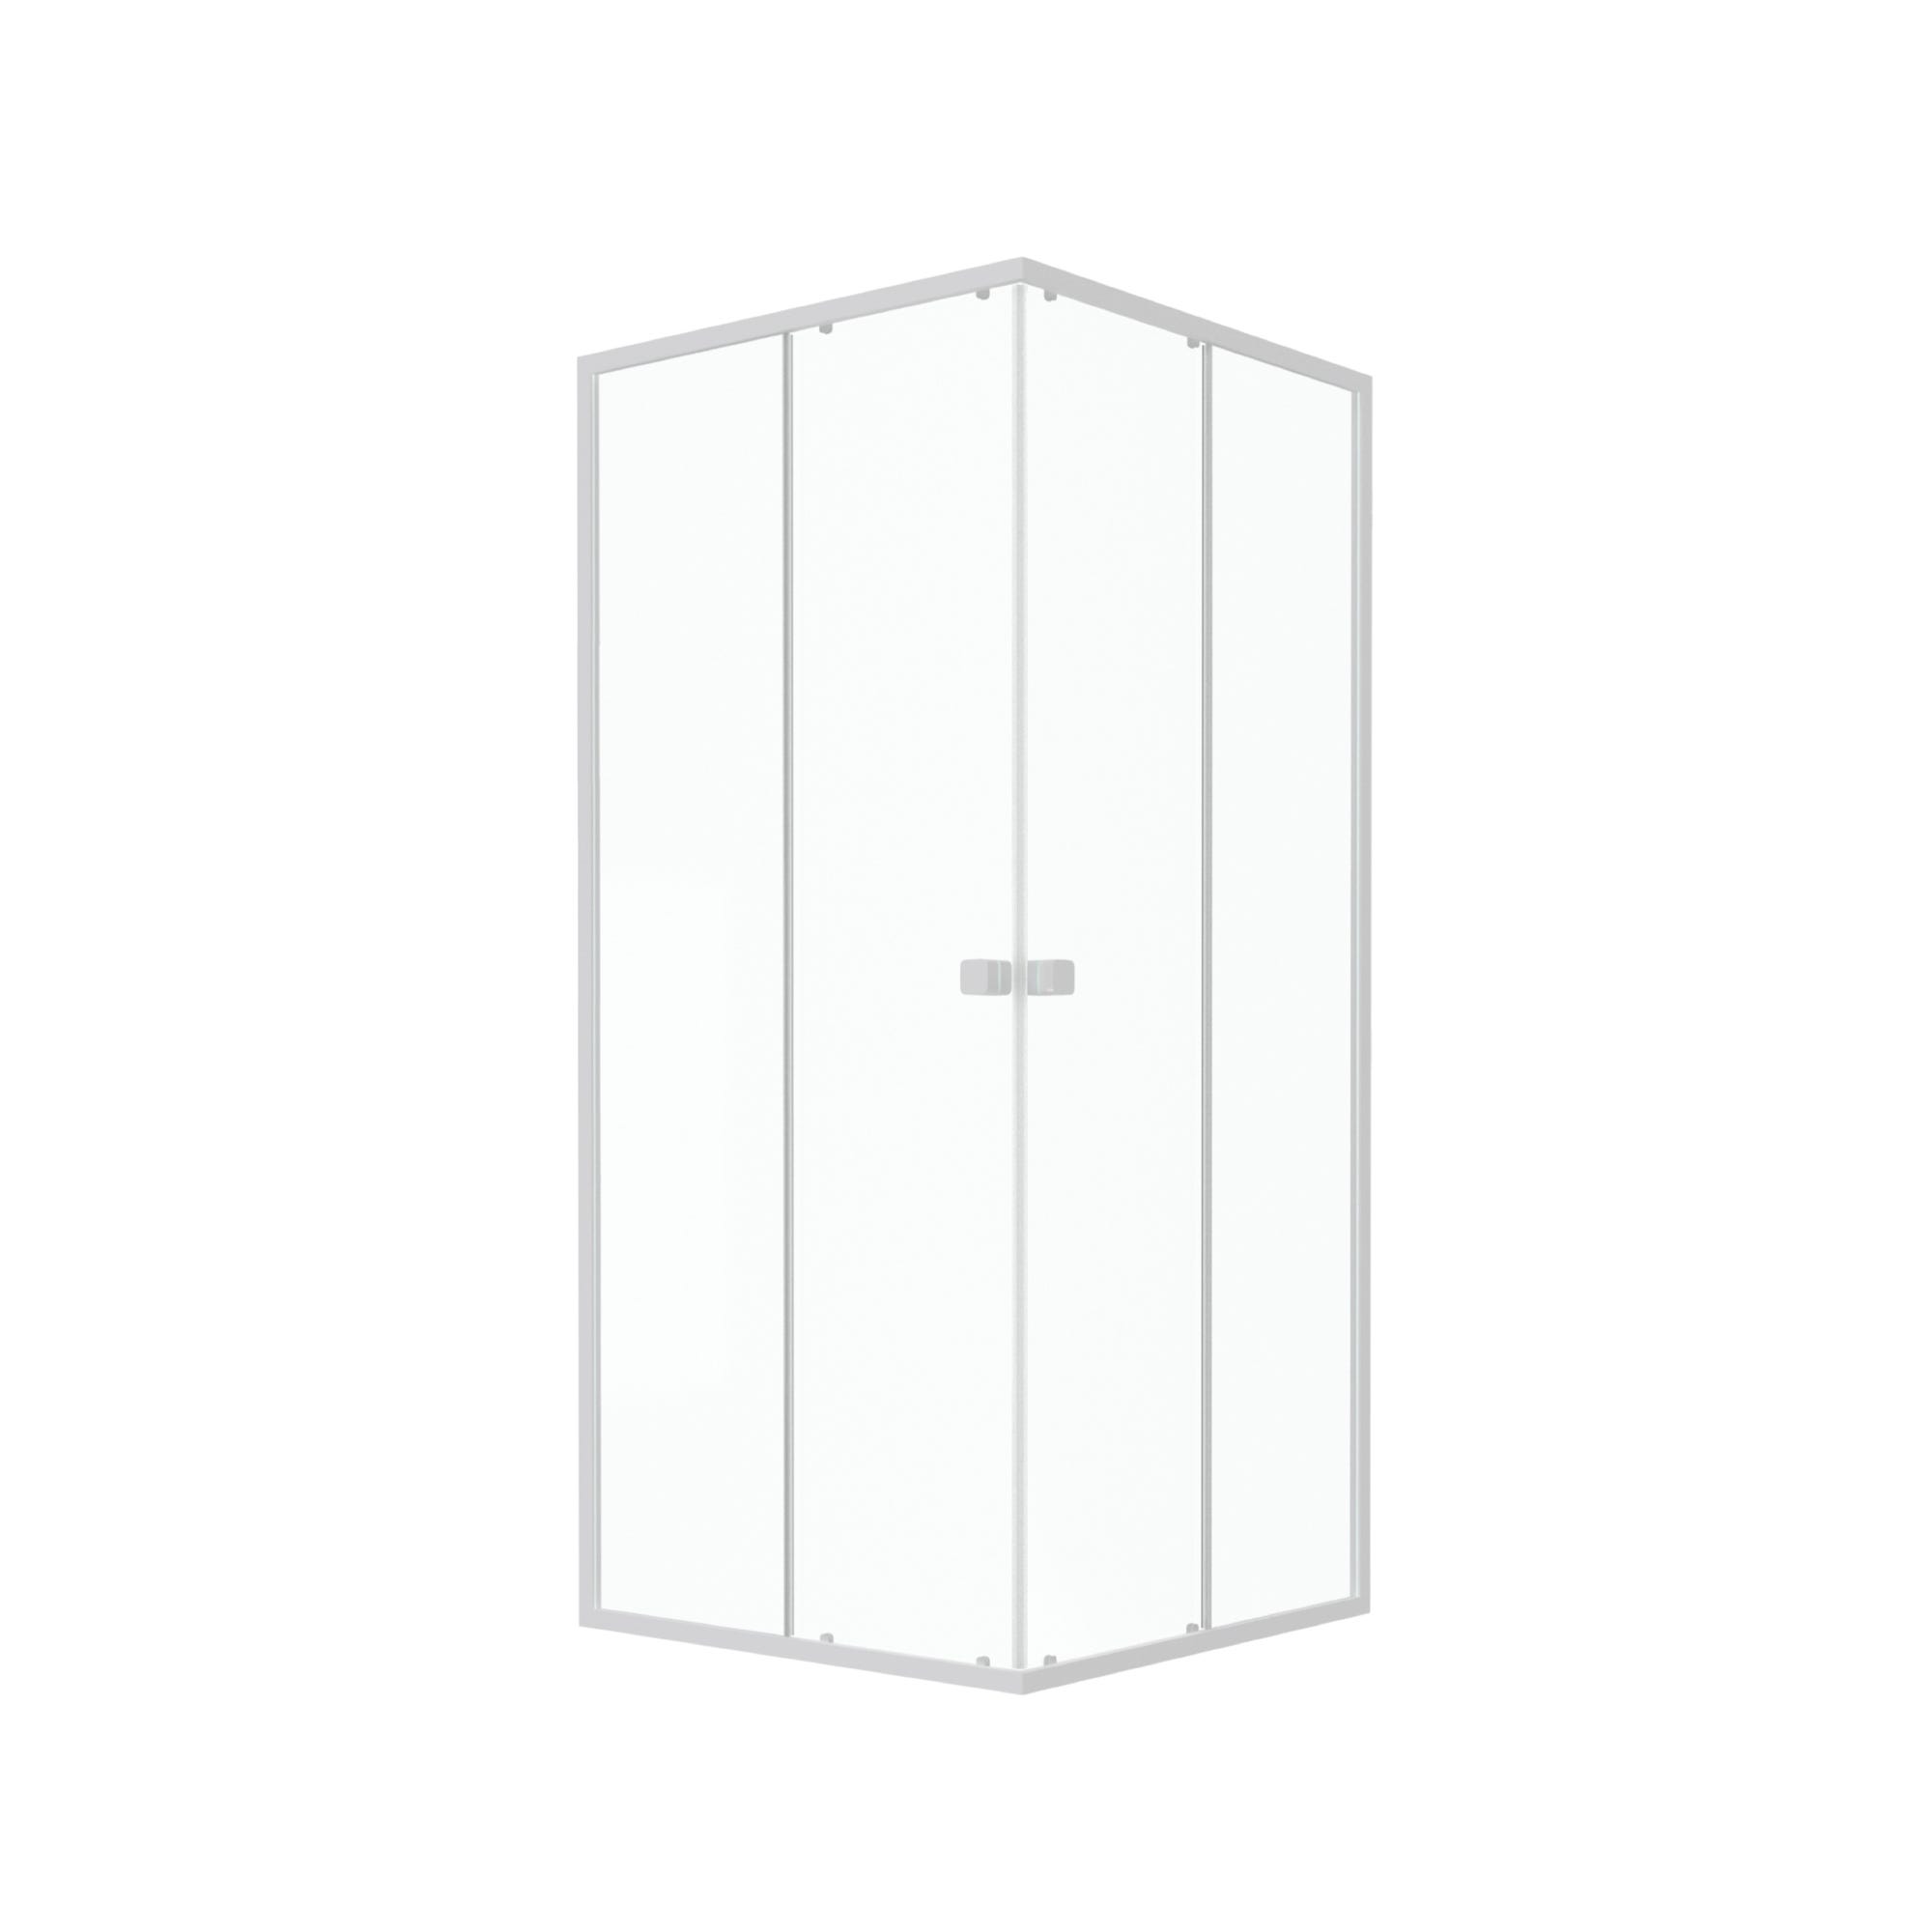 Paroi porte de douche carrée blanc extensible 77 à 90cm de largeur - verre transparent - WHITY 4